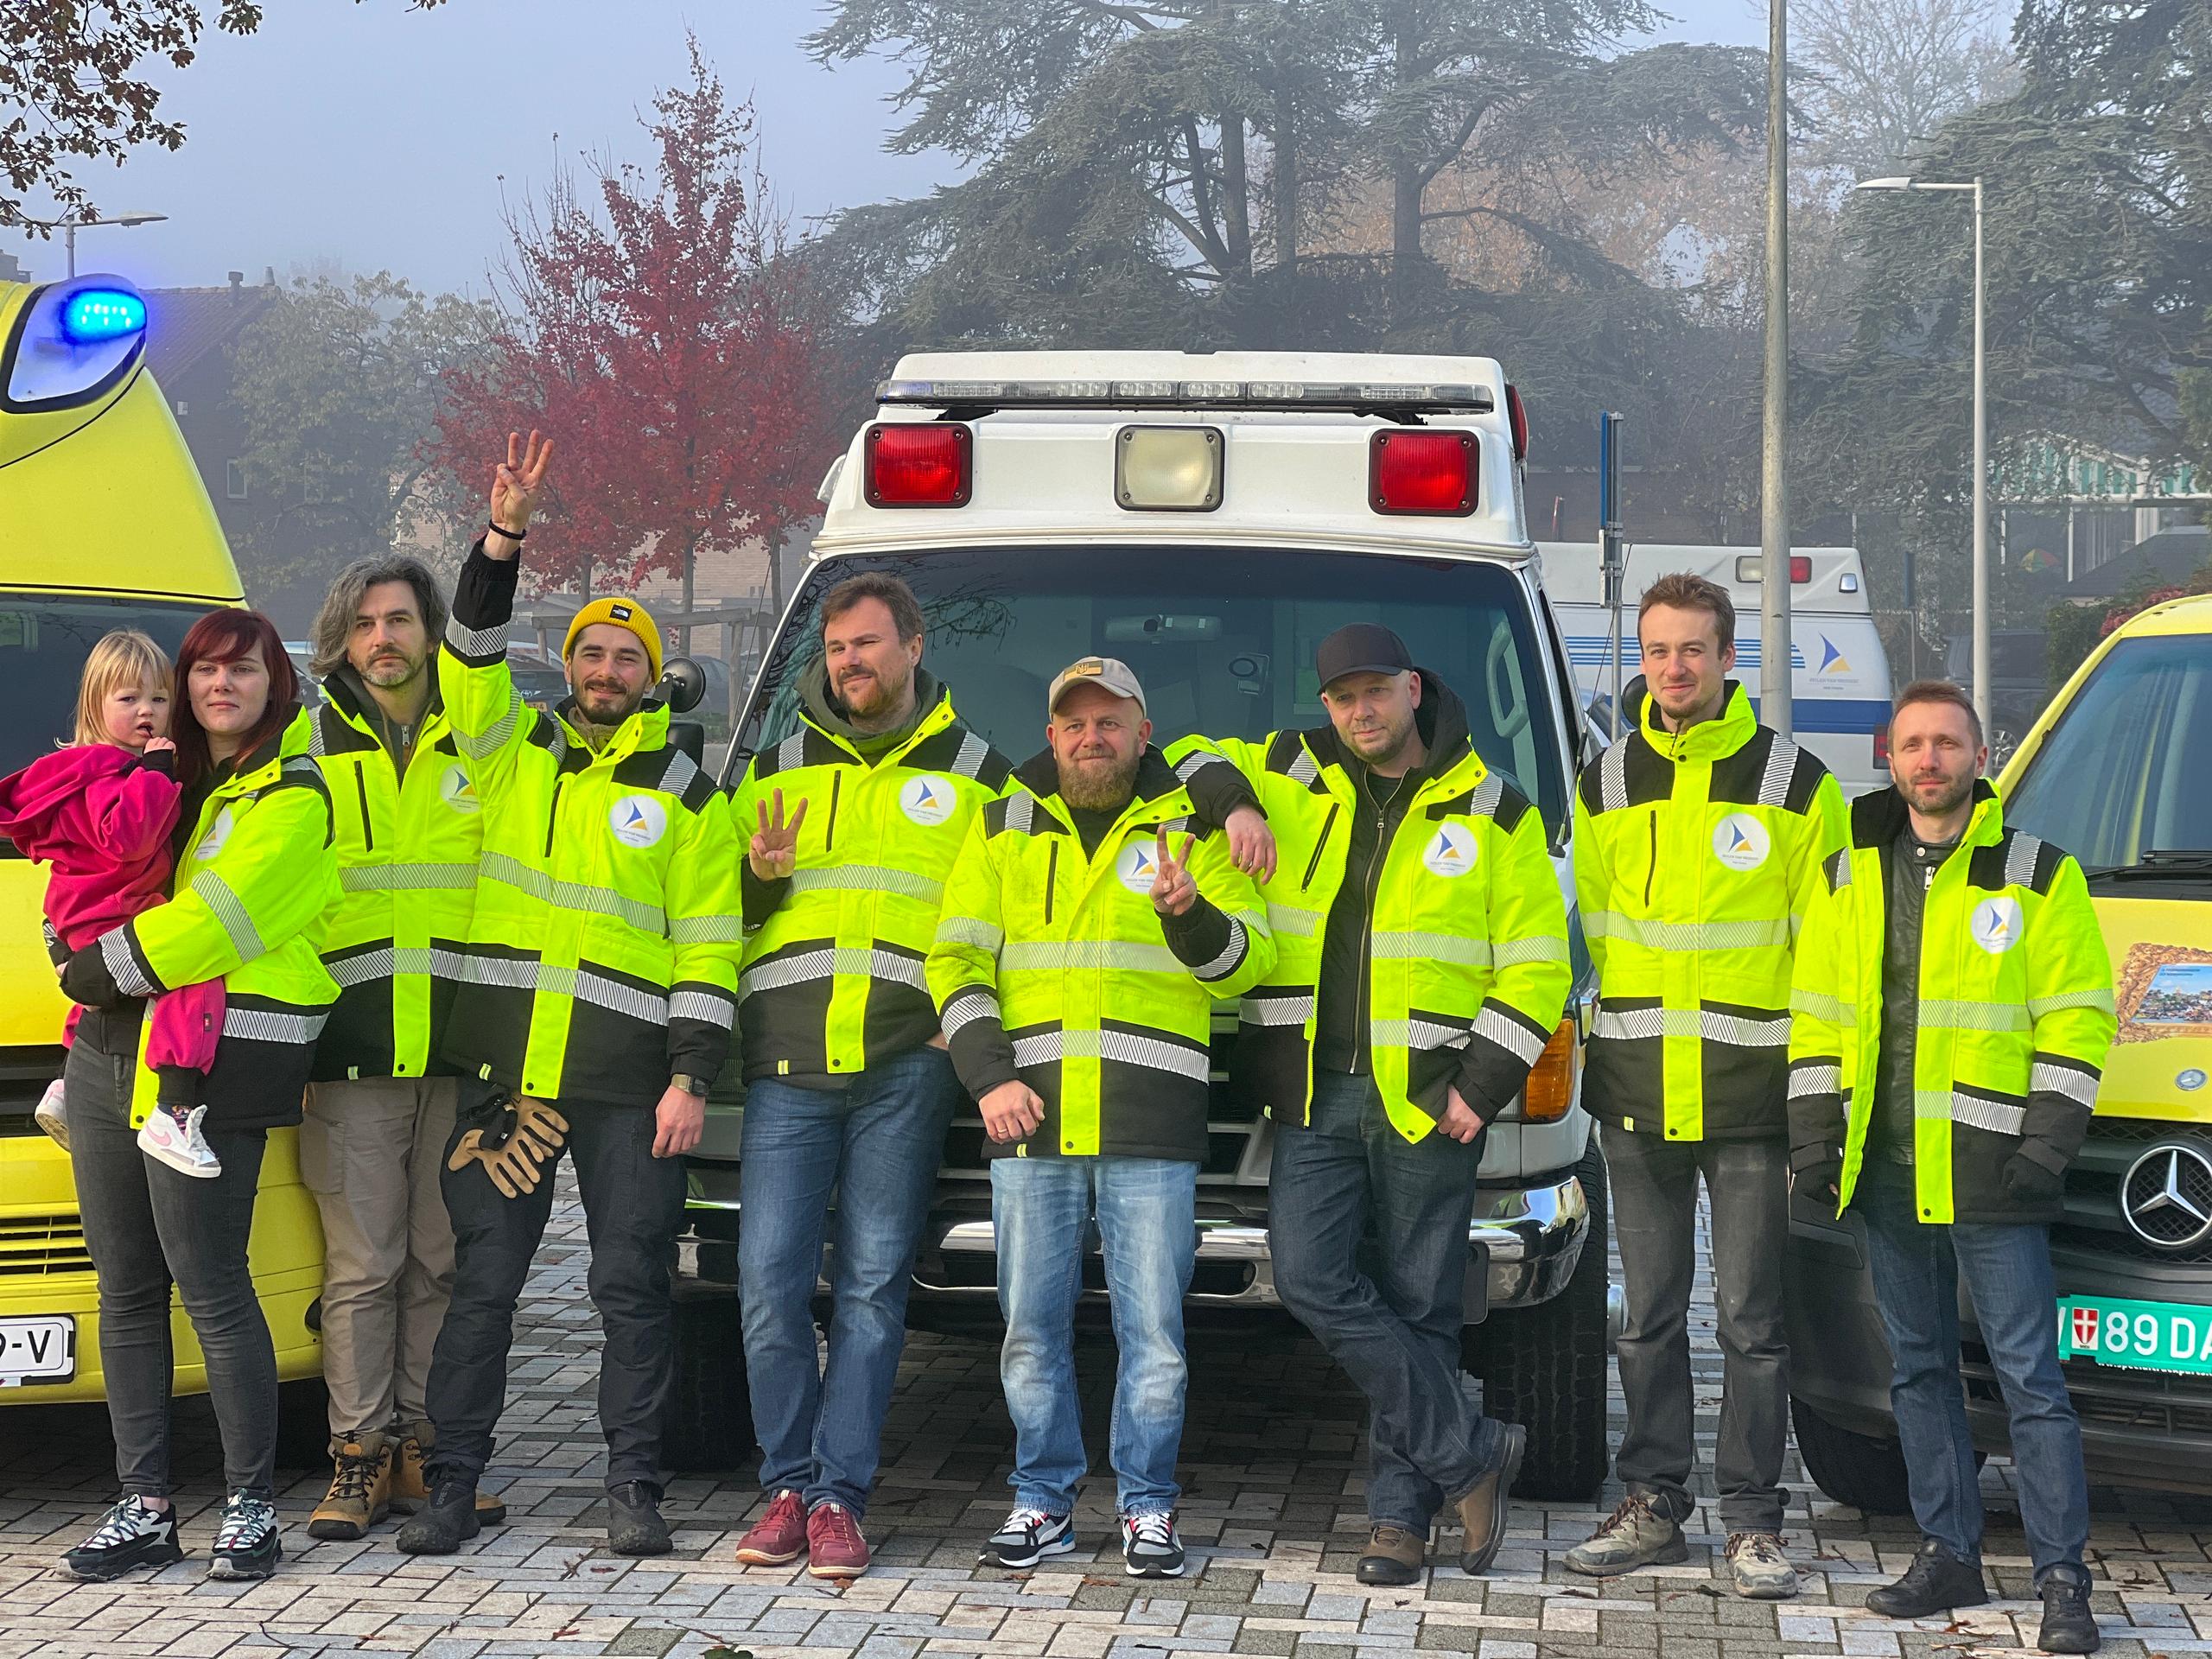 Group photo of volunteer team in Amsterdam